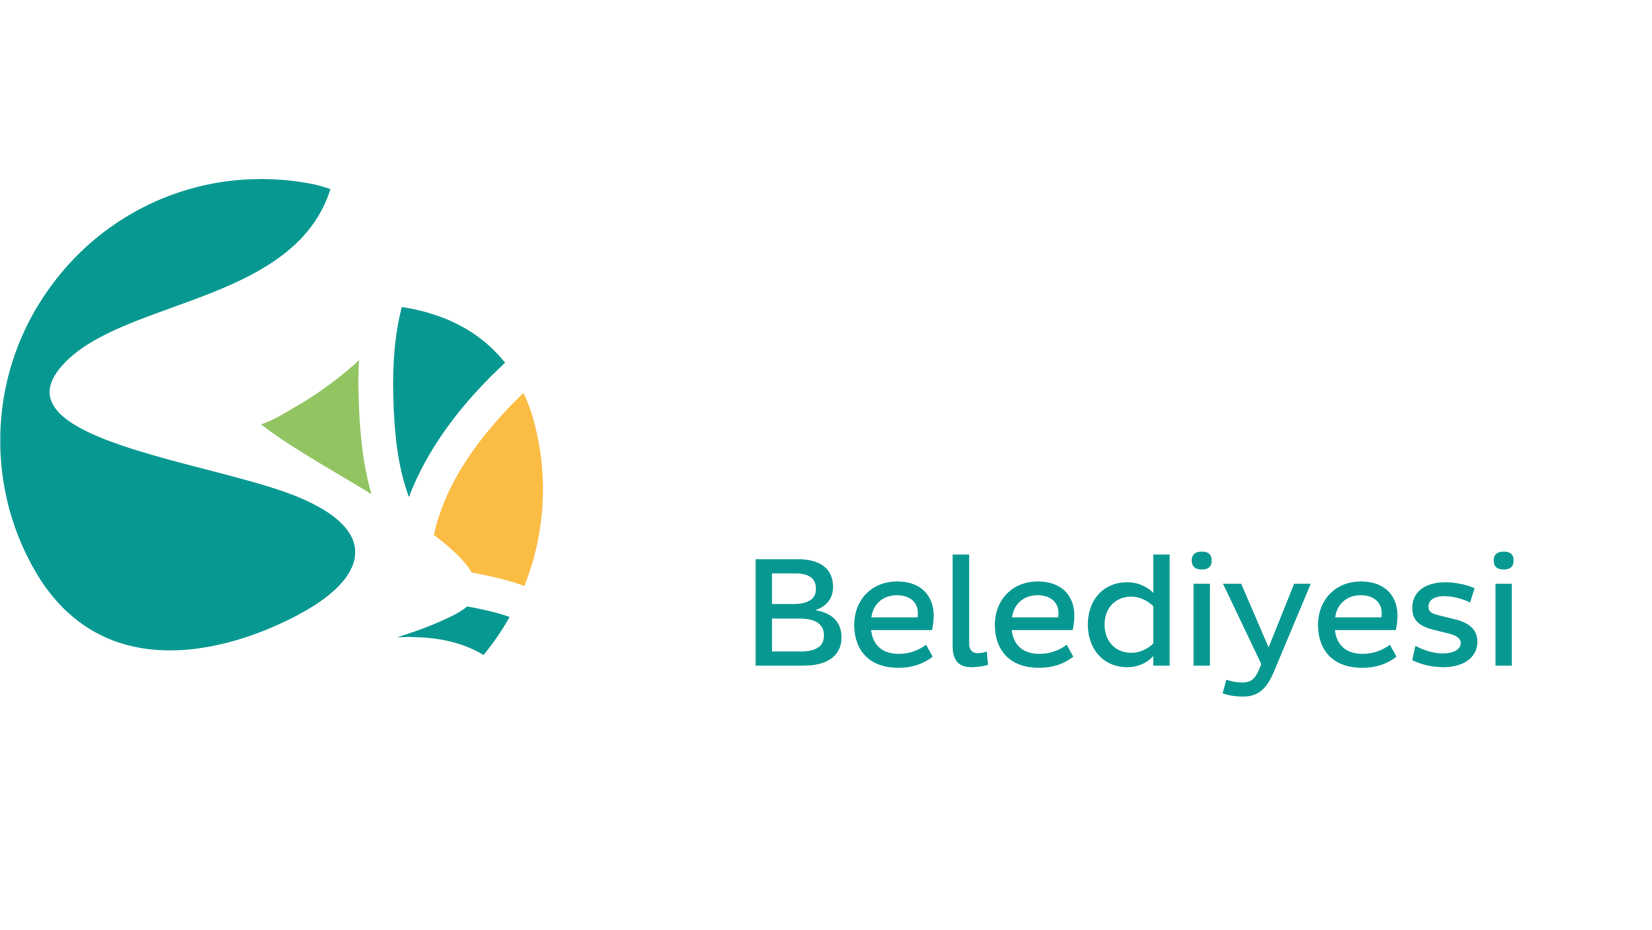 Beykoz Municipality